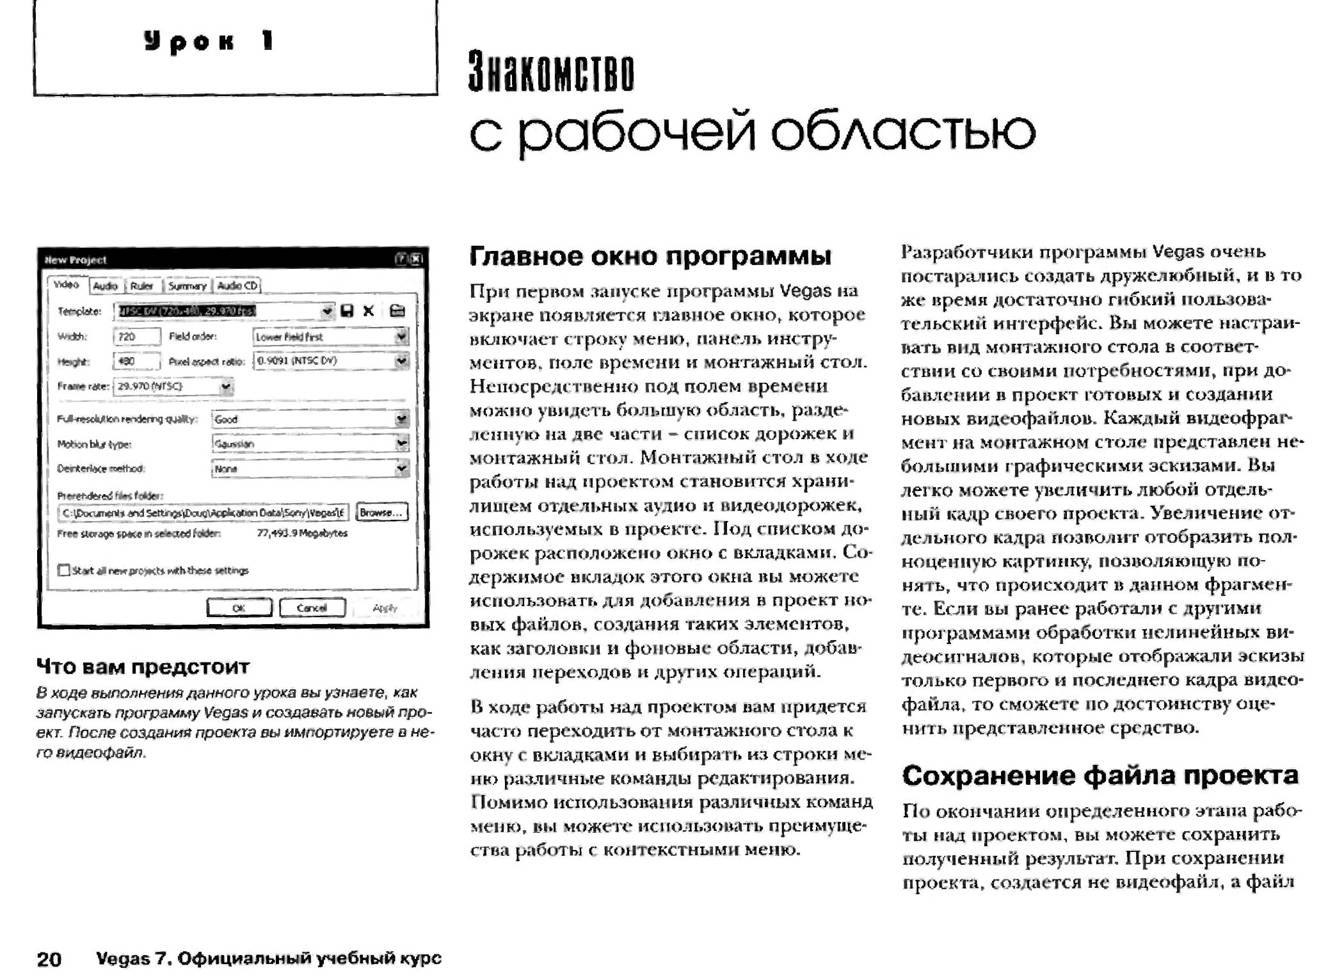 http://redaktori-uroki.3dn.ru/_ph/13/963537588.jpg